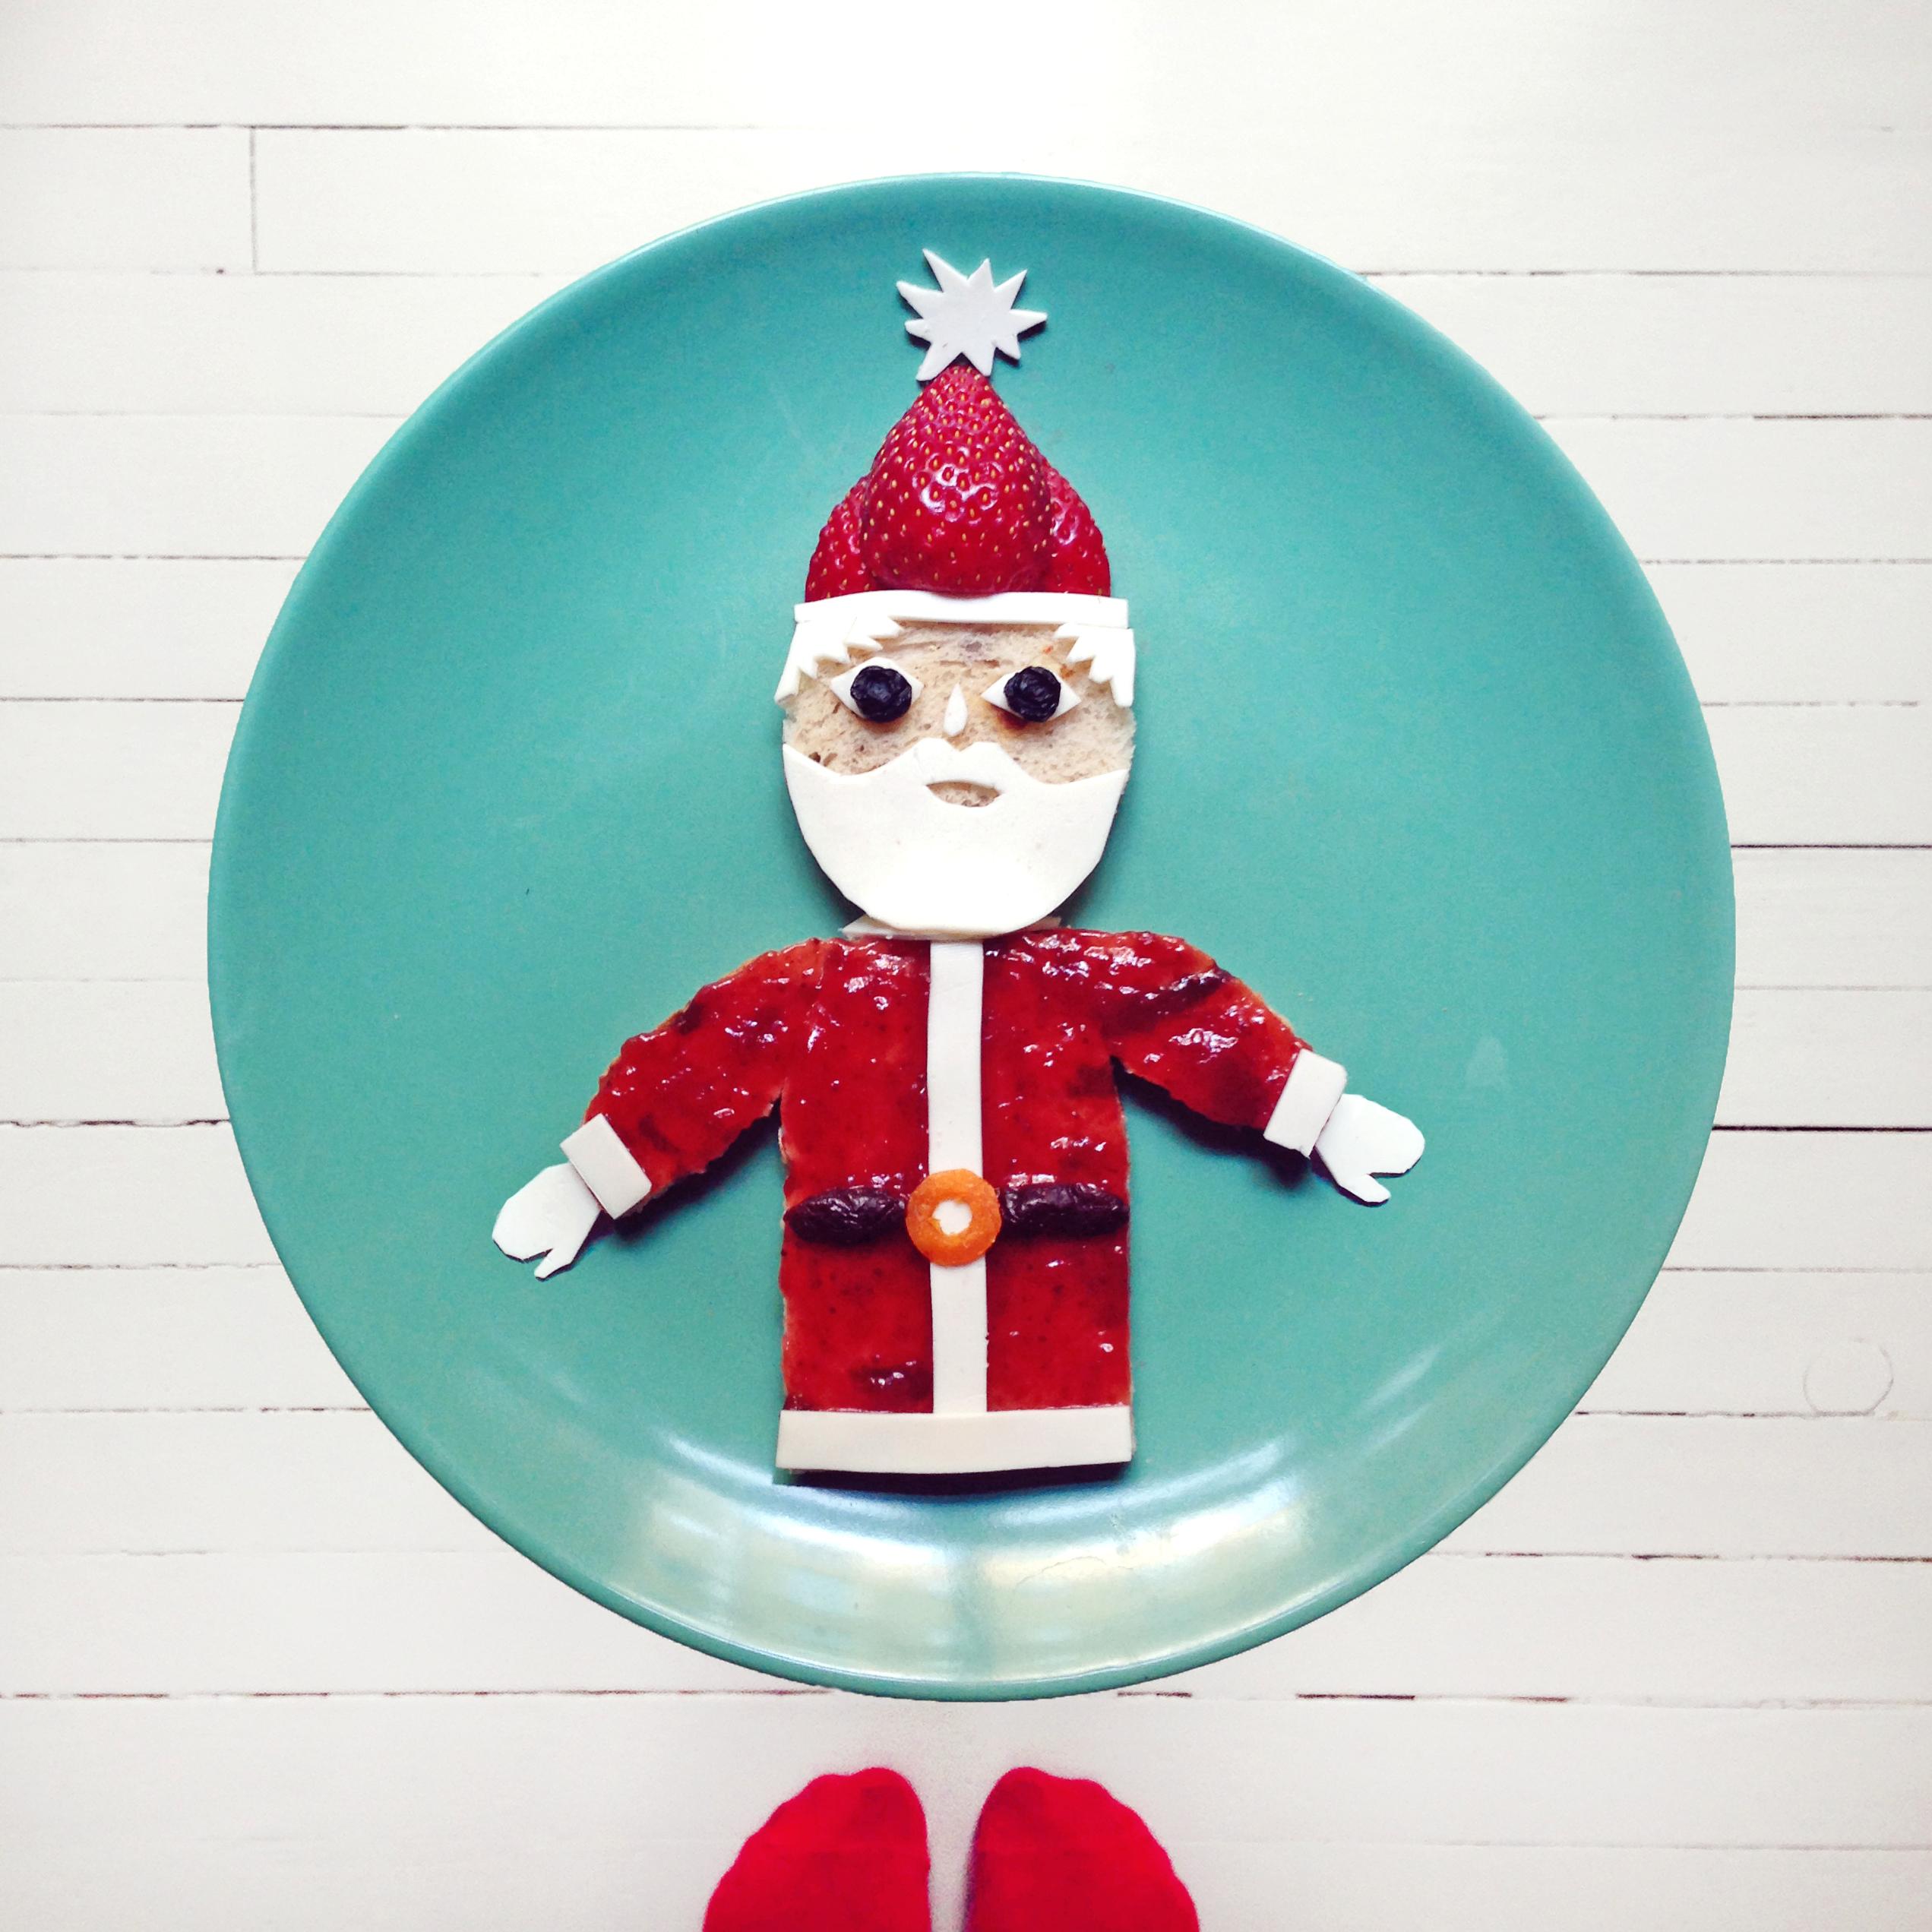 Steg 5: Kutt jordbæret i to som nisselue og dekorer med hvitostdusk. Klipp ut skjegg, hår og votter. Legg på to tørkede blåbær eller rosiner som øyne. Pynt gjerne opp med kiwi-juletrær og nyt julemåltidet!